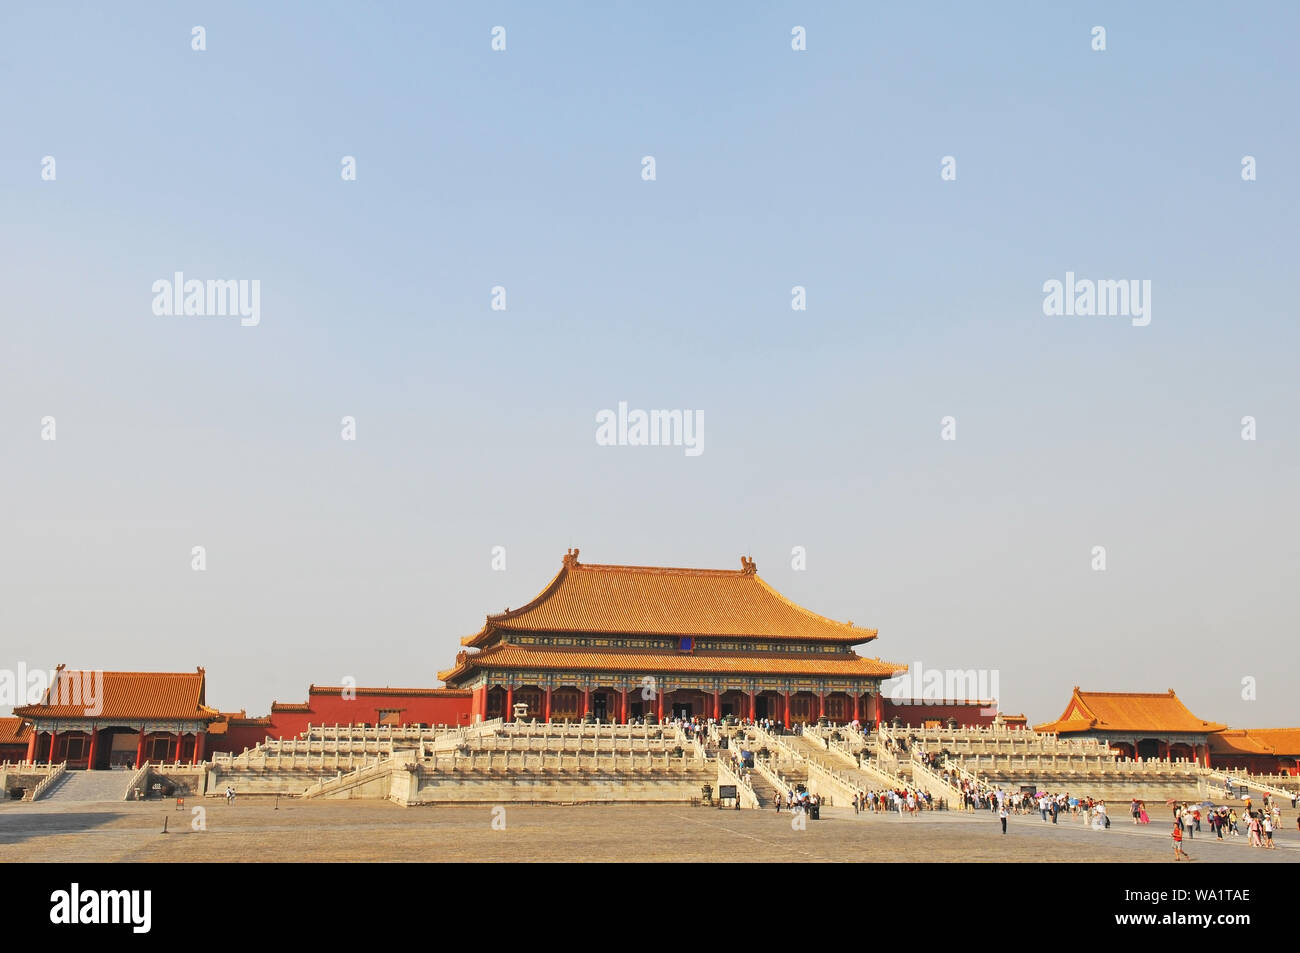 Stadtbild der Verbotenen Stadt mit Touristen auf dem Weg zur Halle der Höchsten Harmonie, Peking, China. Stockfoto